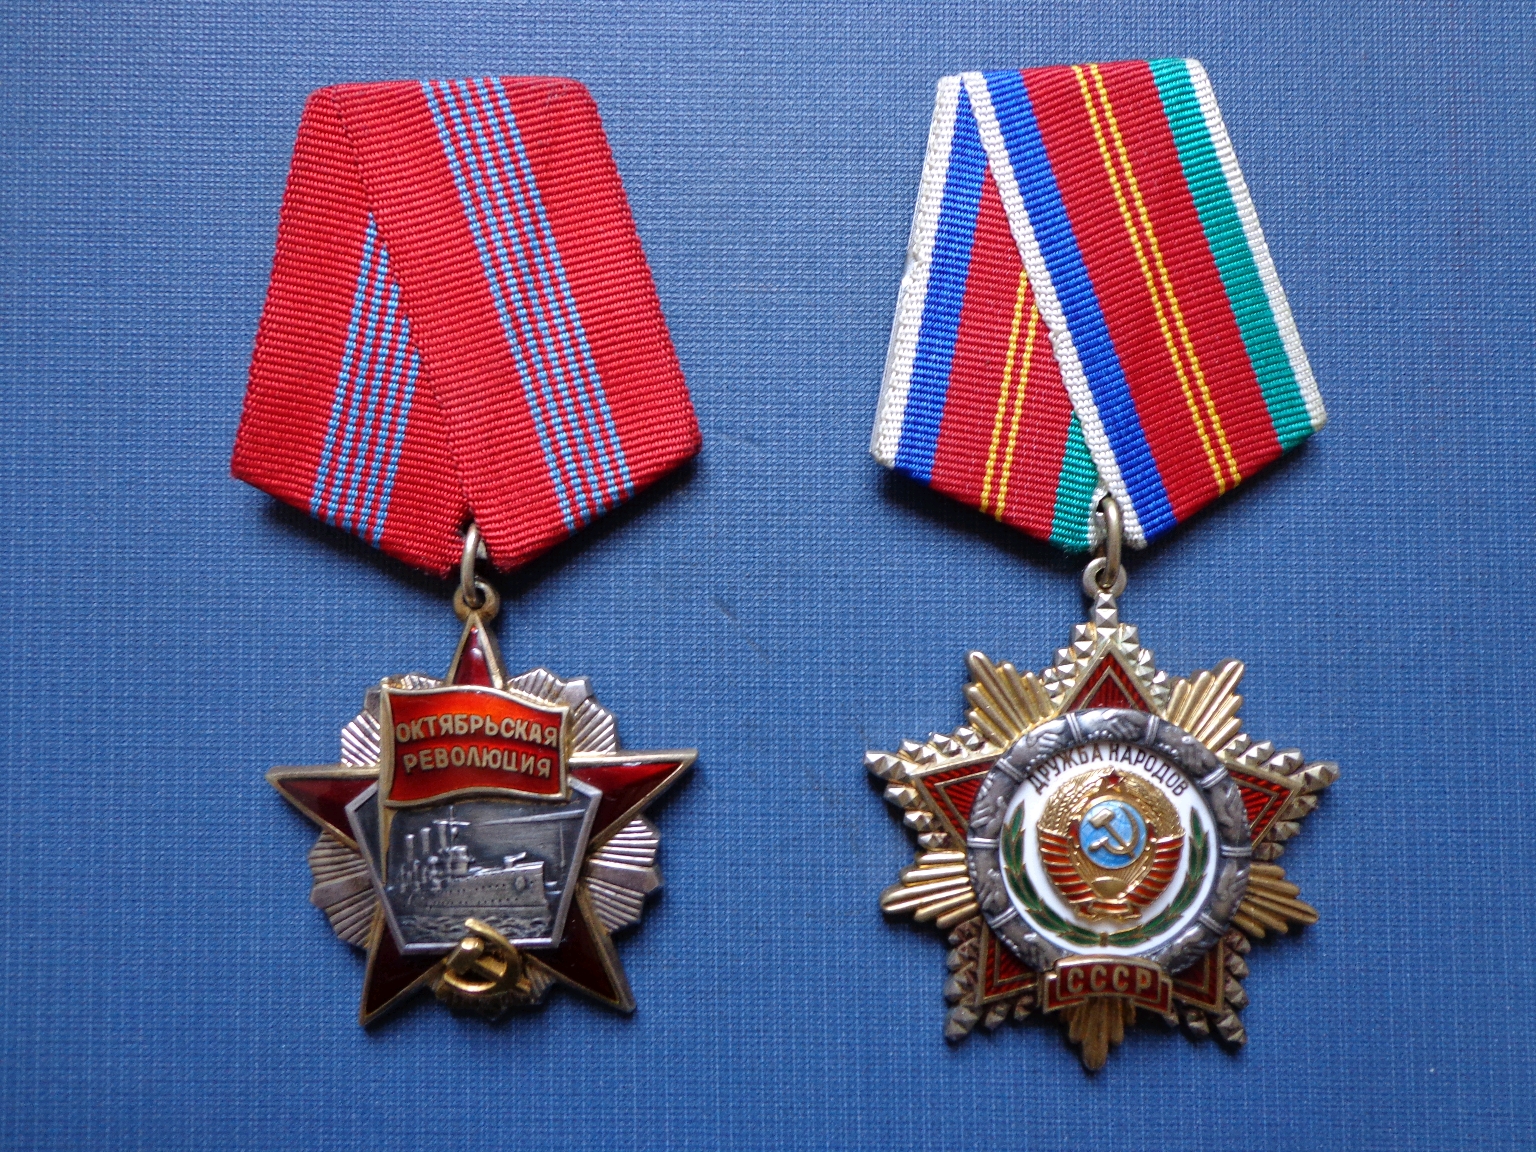 1976年3月12日被授予78842号十月革命勋章1971年9月9日被授予590377号